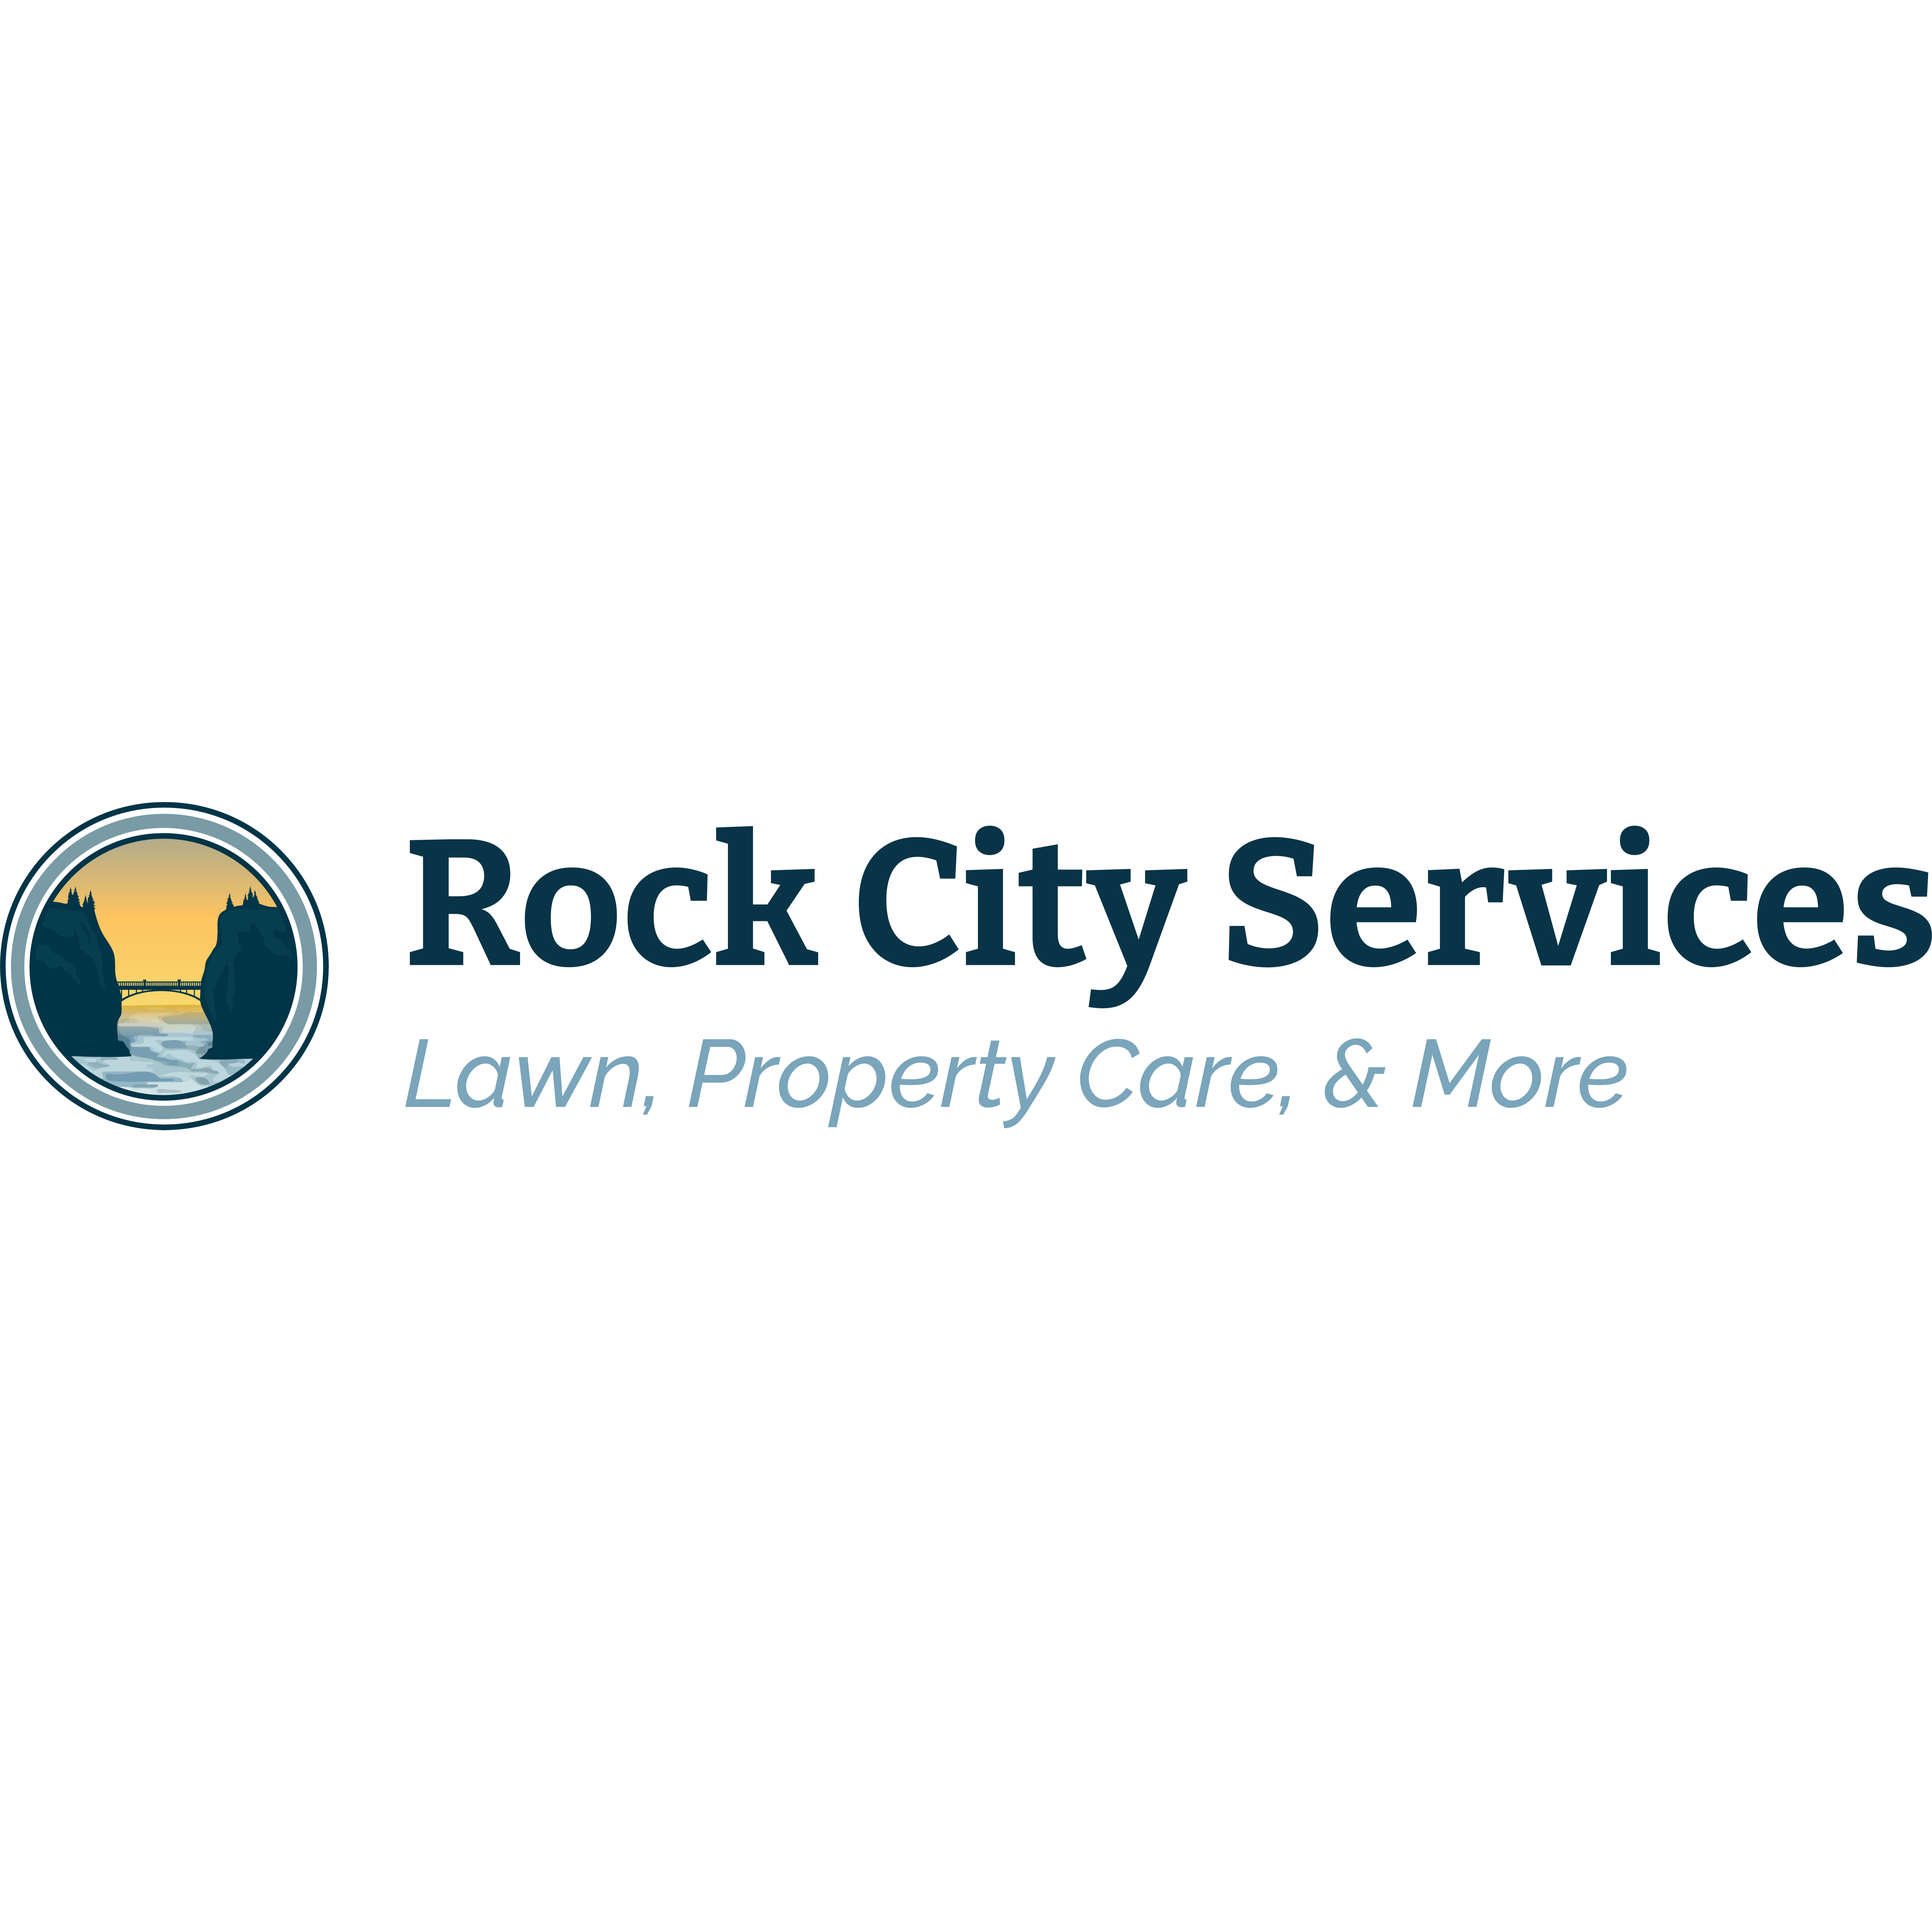 Rock City Services